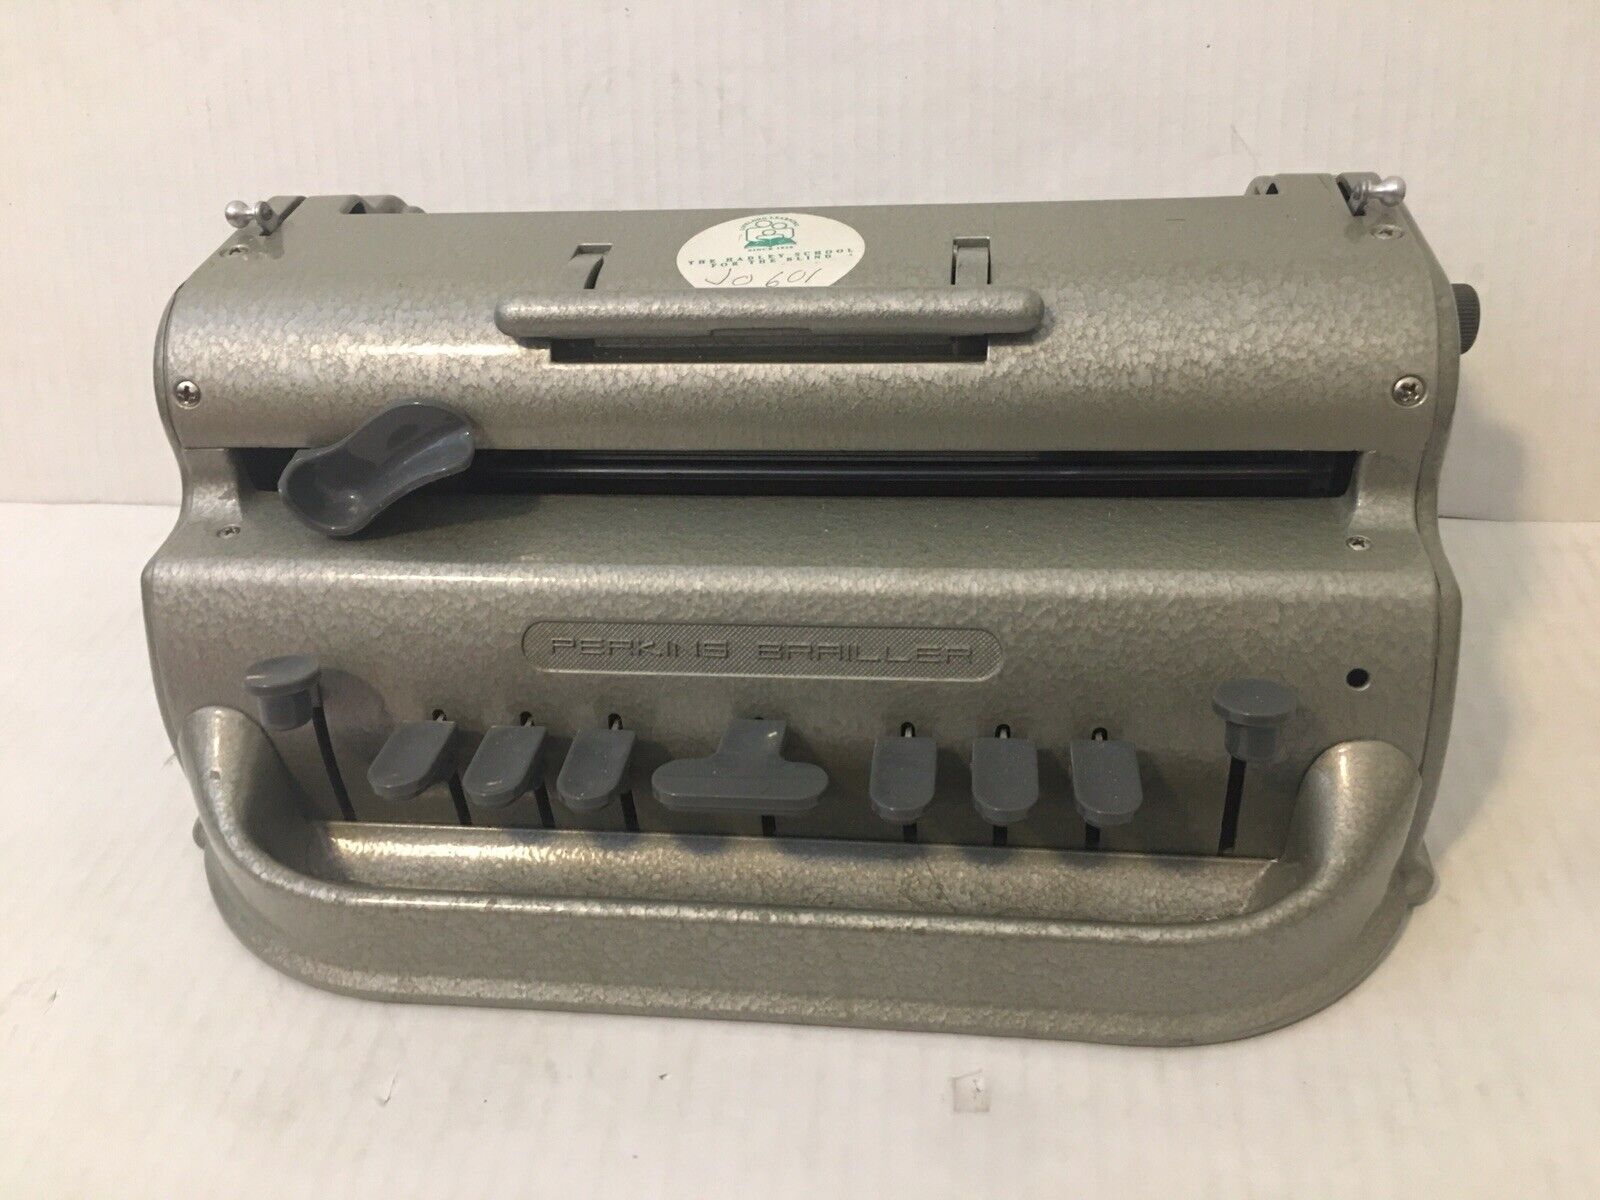 Perkins Brailler Vintage Braille Typewriter David Abraham (WORKING)